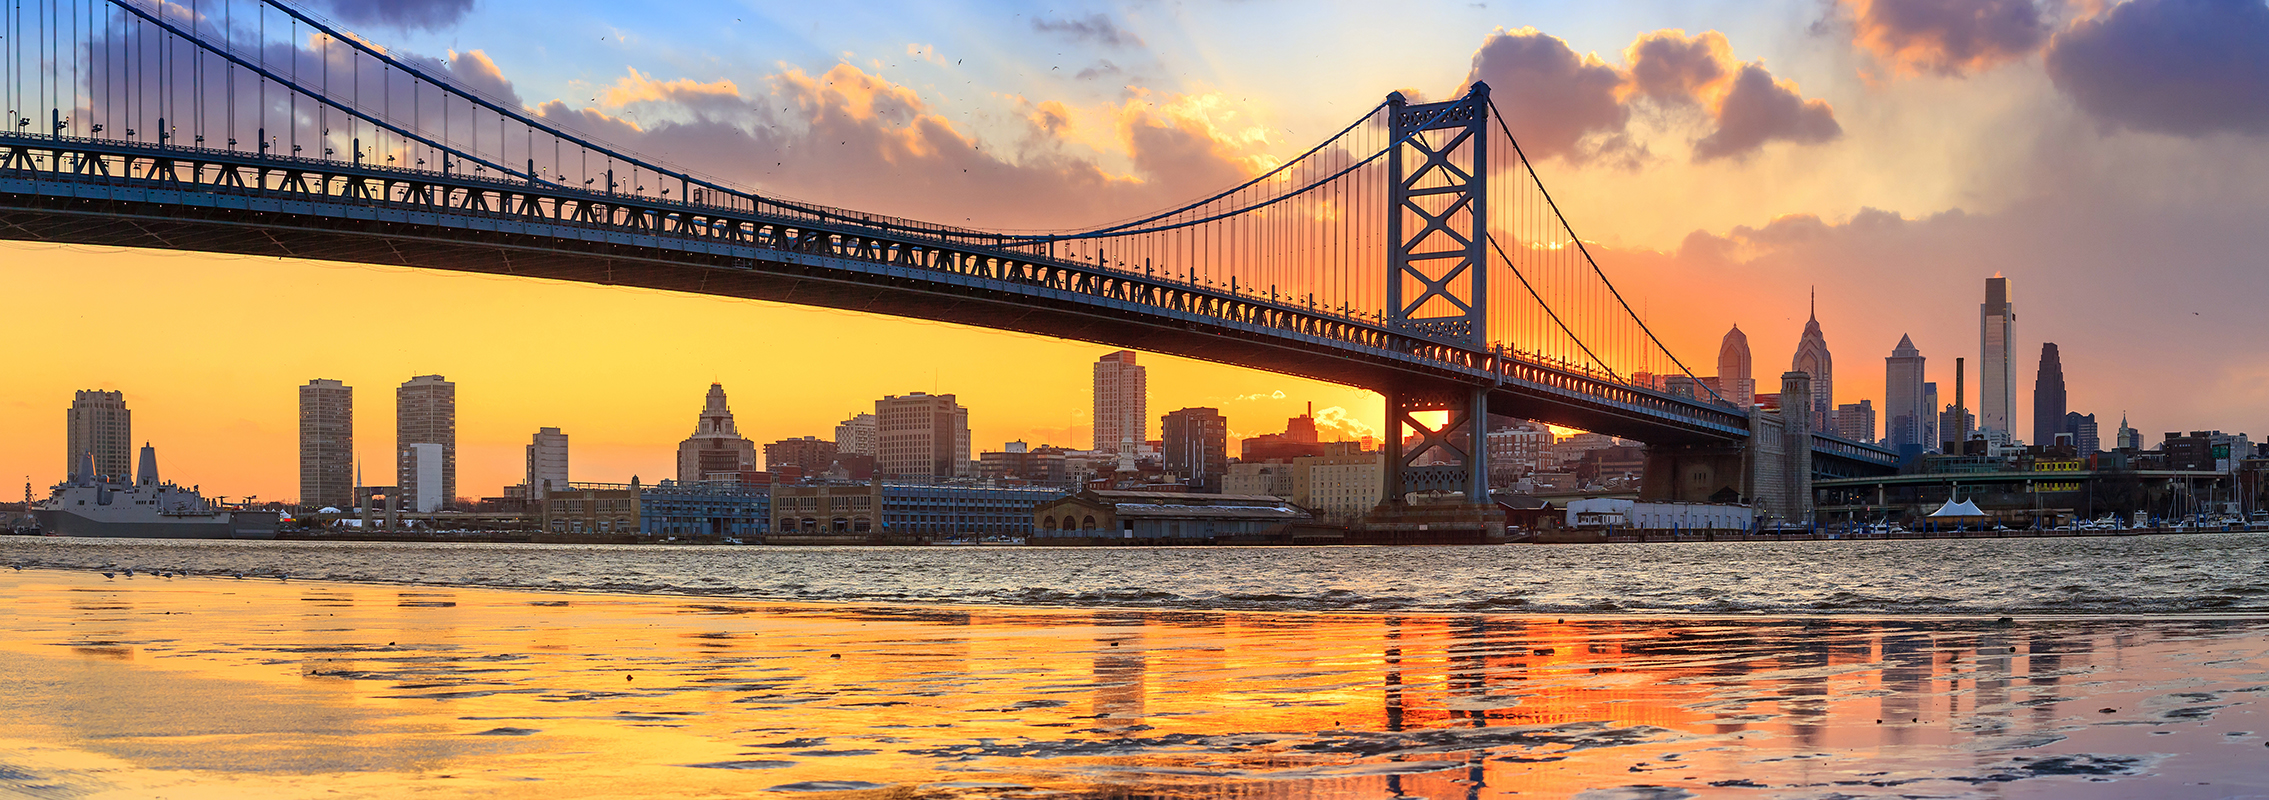 黄昏时分的Philadelphia天际线和本·富兰克林大桥景观